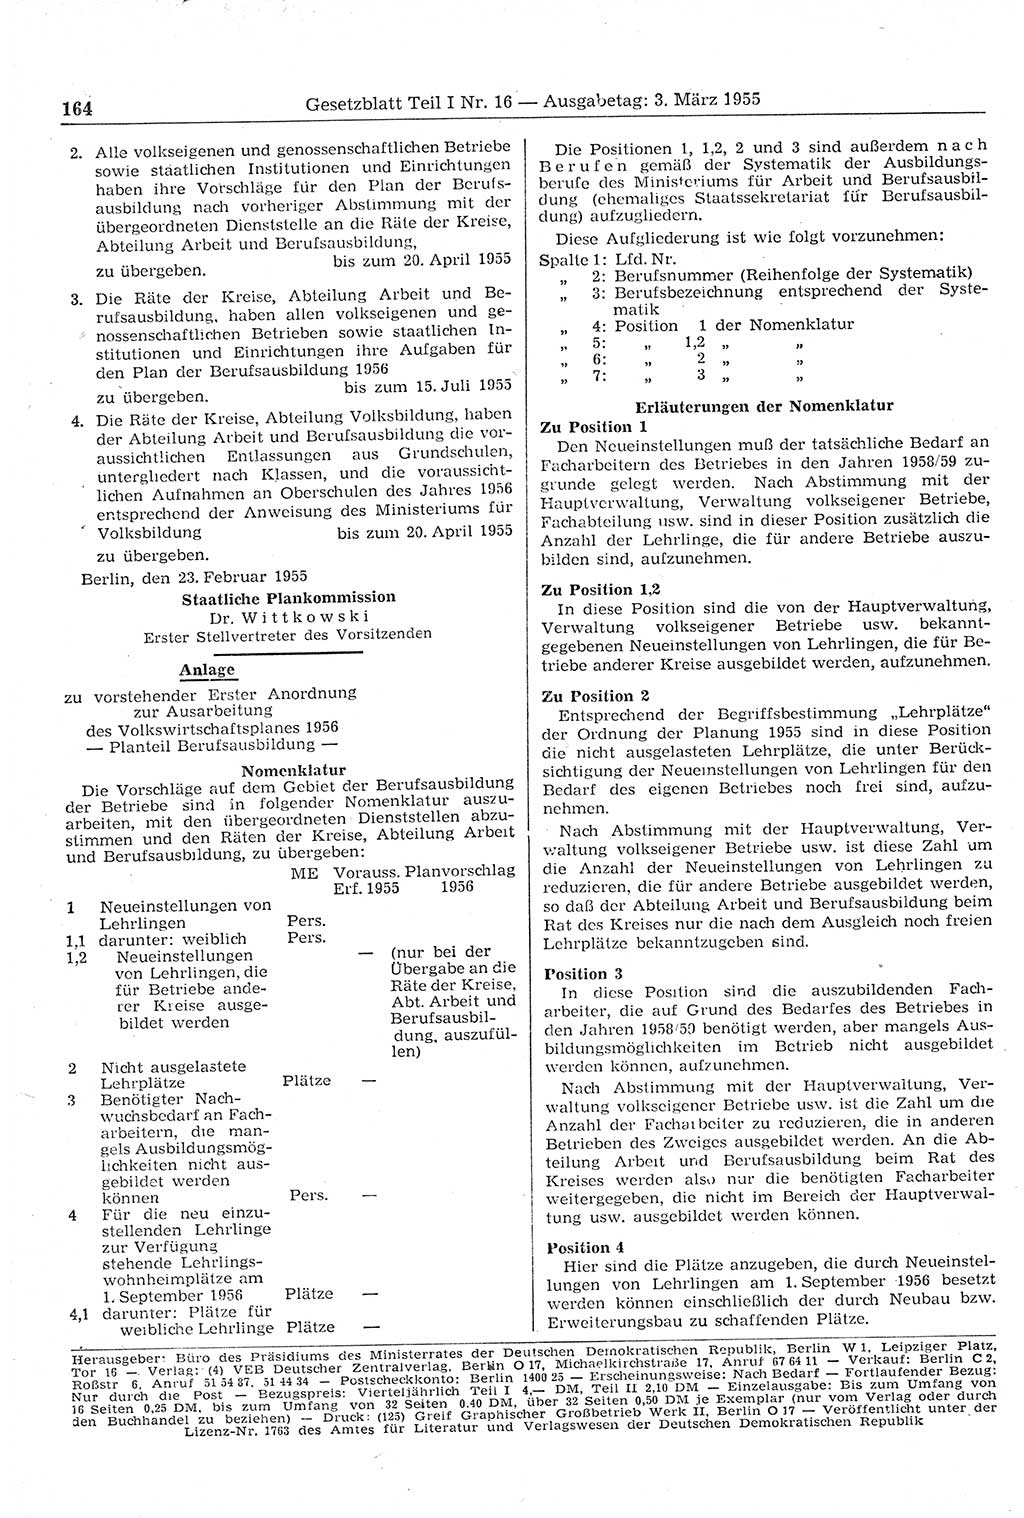 Gesetzblatt (GBl.) der Deutschen Demokratischen Republik (DDR) Teil Ⅰ 1955, Seite 164 (GBl. DDR Ⅰ 1955, S. 164)